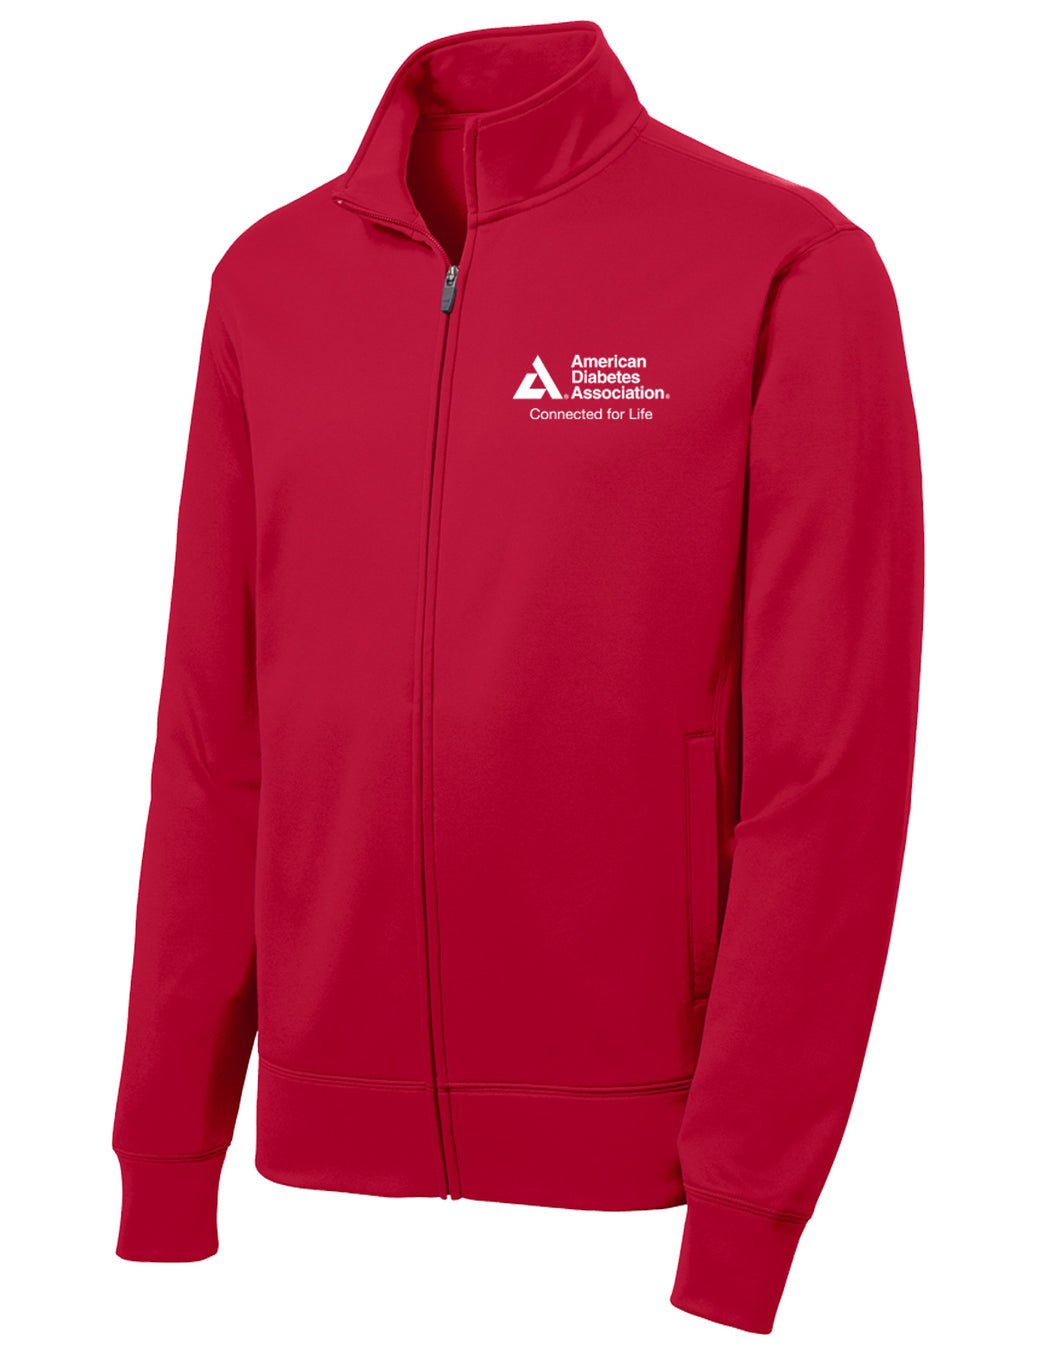 American Diabetes Association Women's Sport-Wick Fleece Jacket